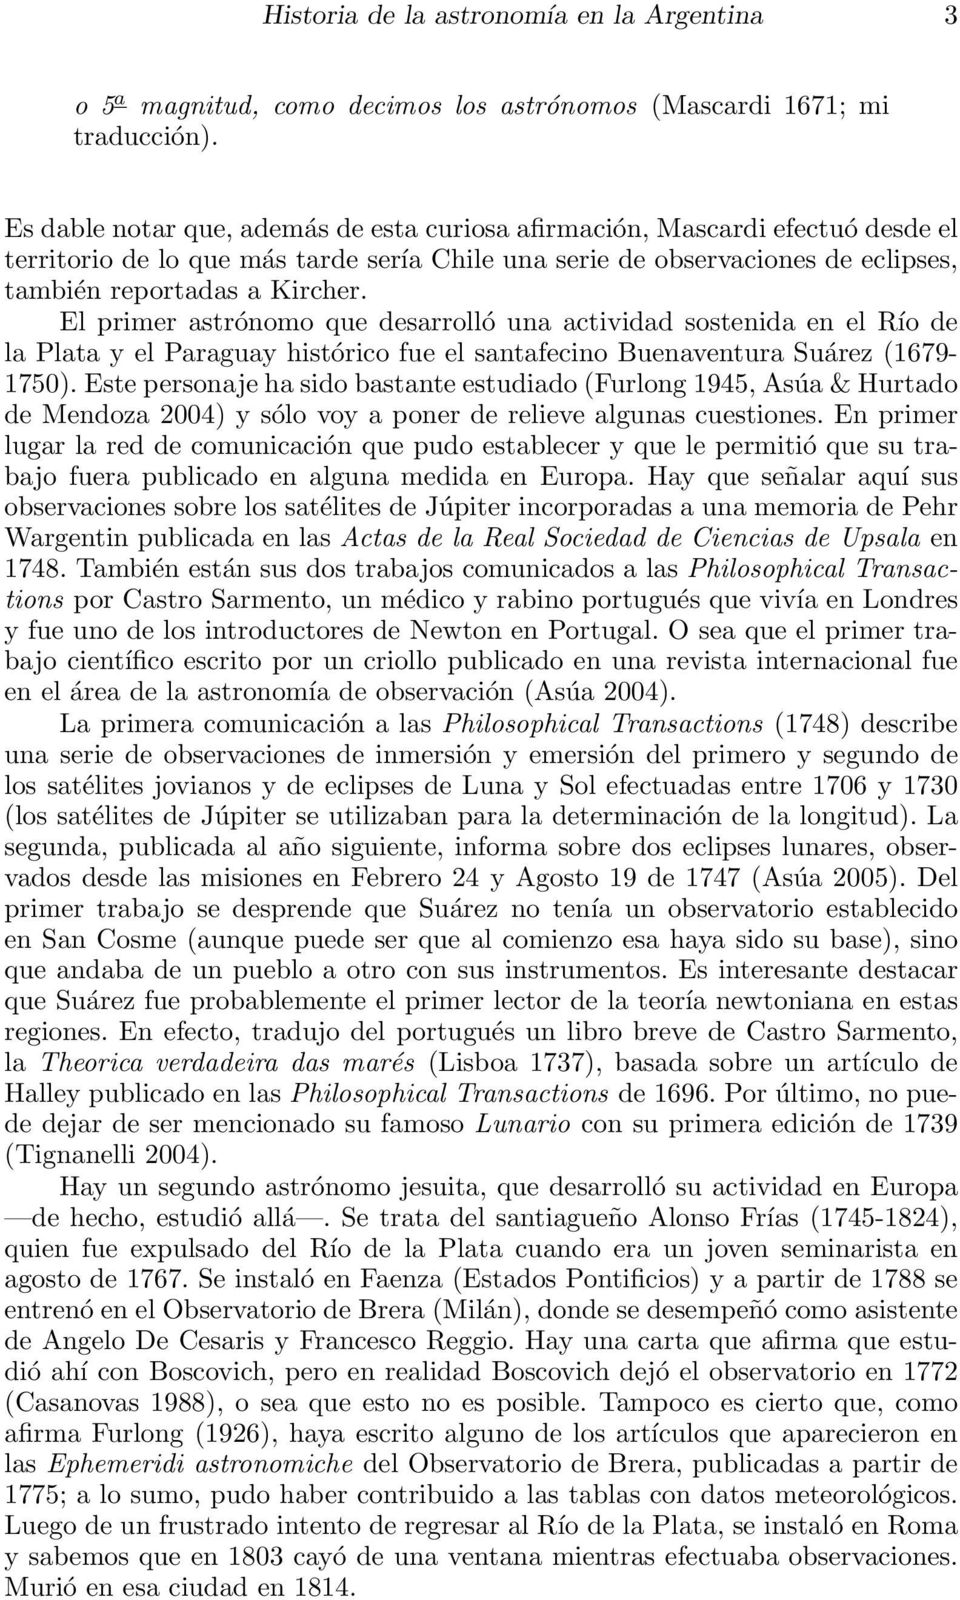 El primer astrónomo que desarrolló una actividad sostenida en el Río de la Plata y el Paraguay histórico fue el santafecino Buenaventura Suárez (1679-1750).